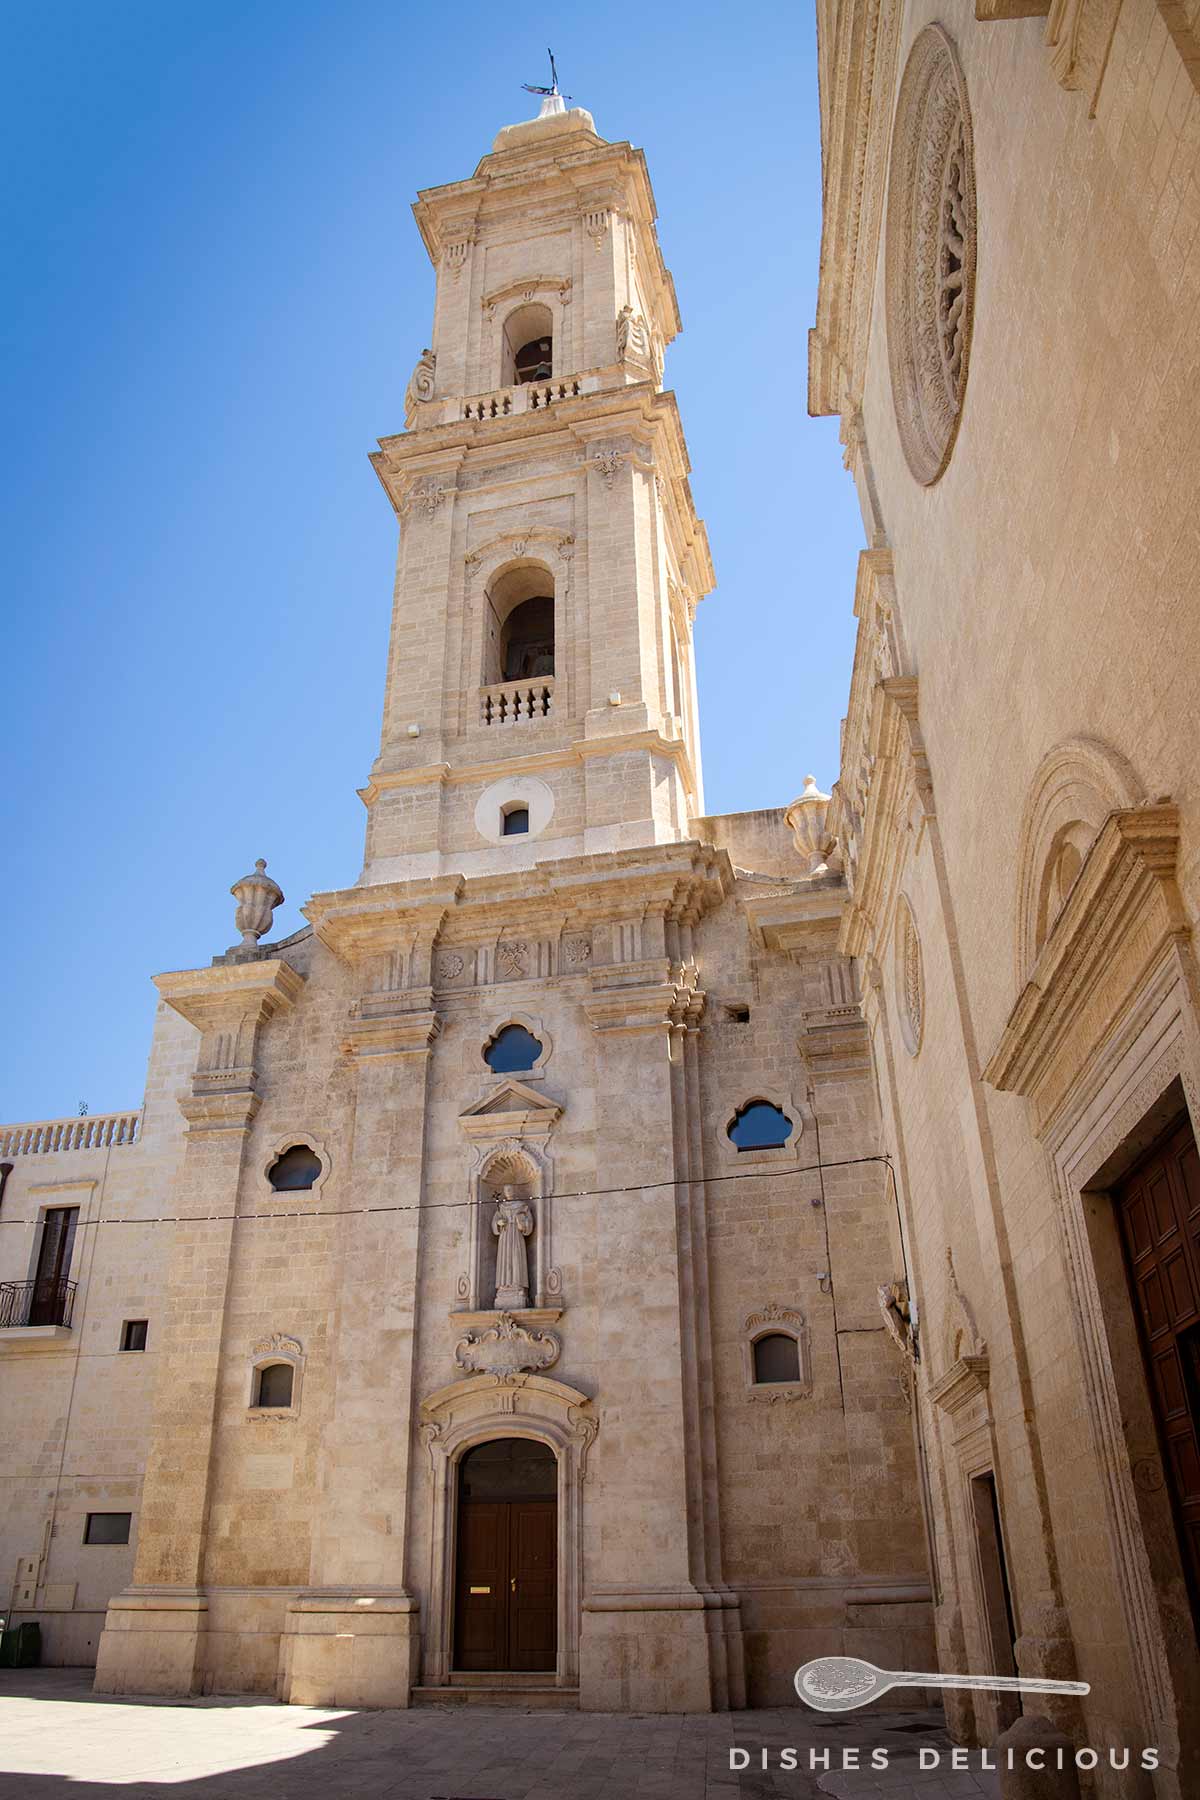 Kirche San Francesco mit zweigeschossigem Kirchturm.